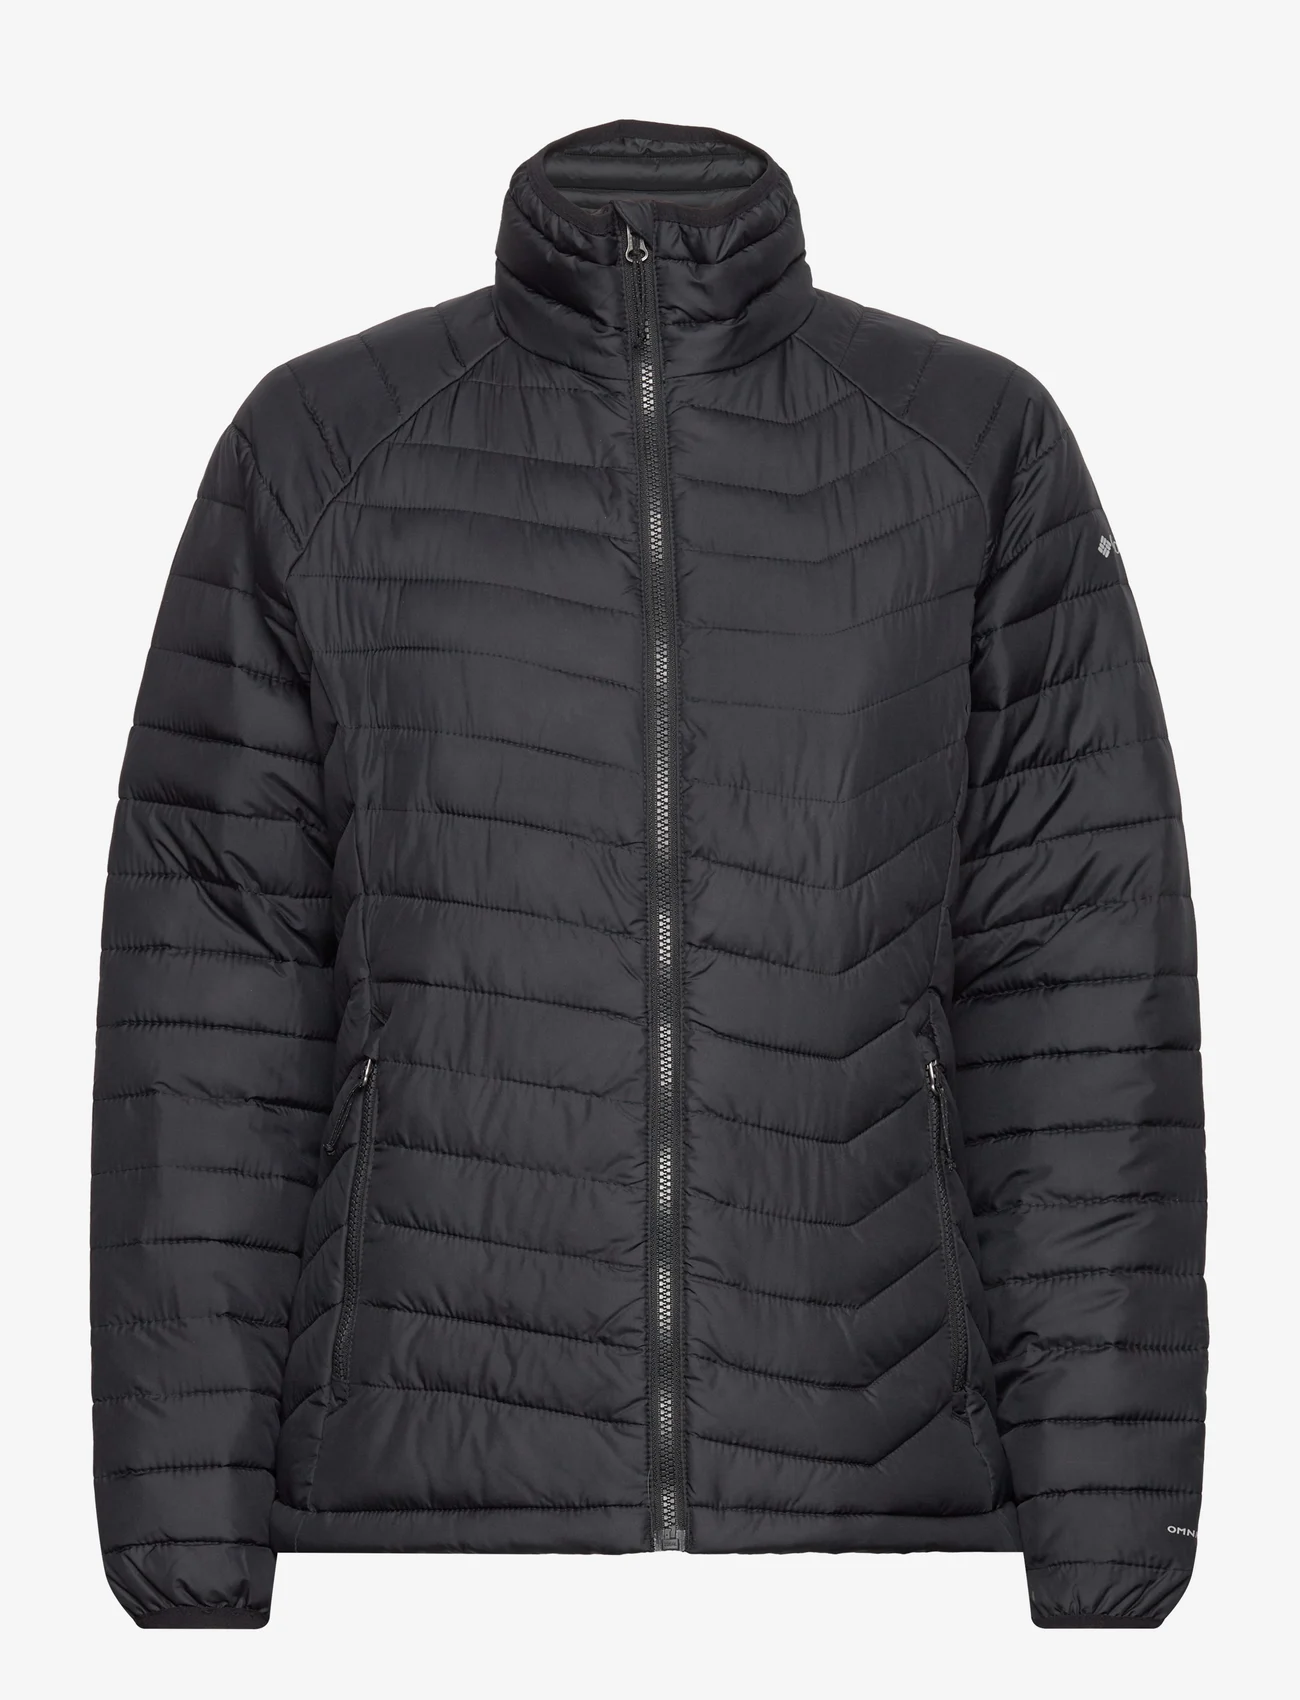 Columbia Sportswear - Powder Lite Jacket - pūkinės ir paminkštintosios striukės - black - 0